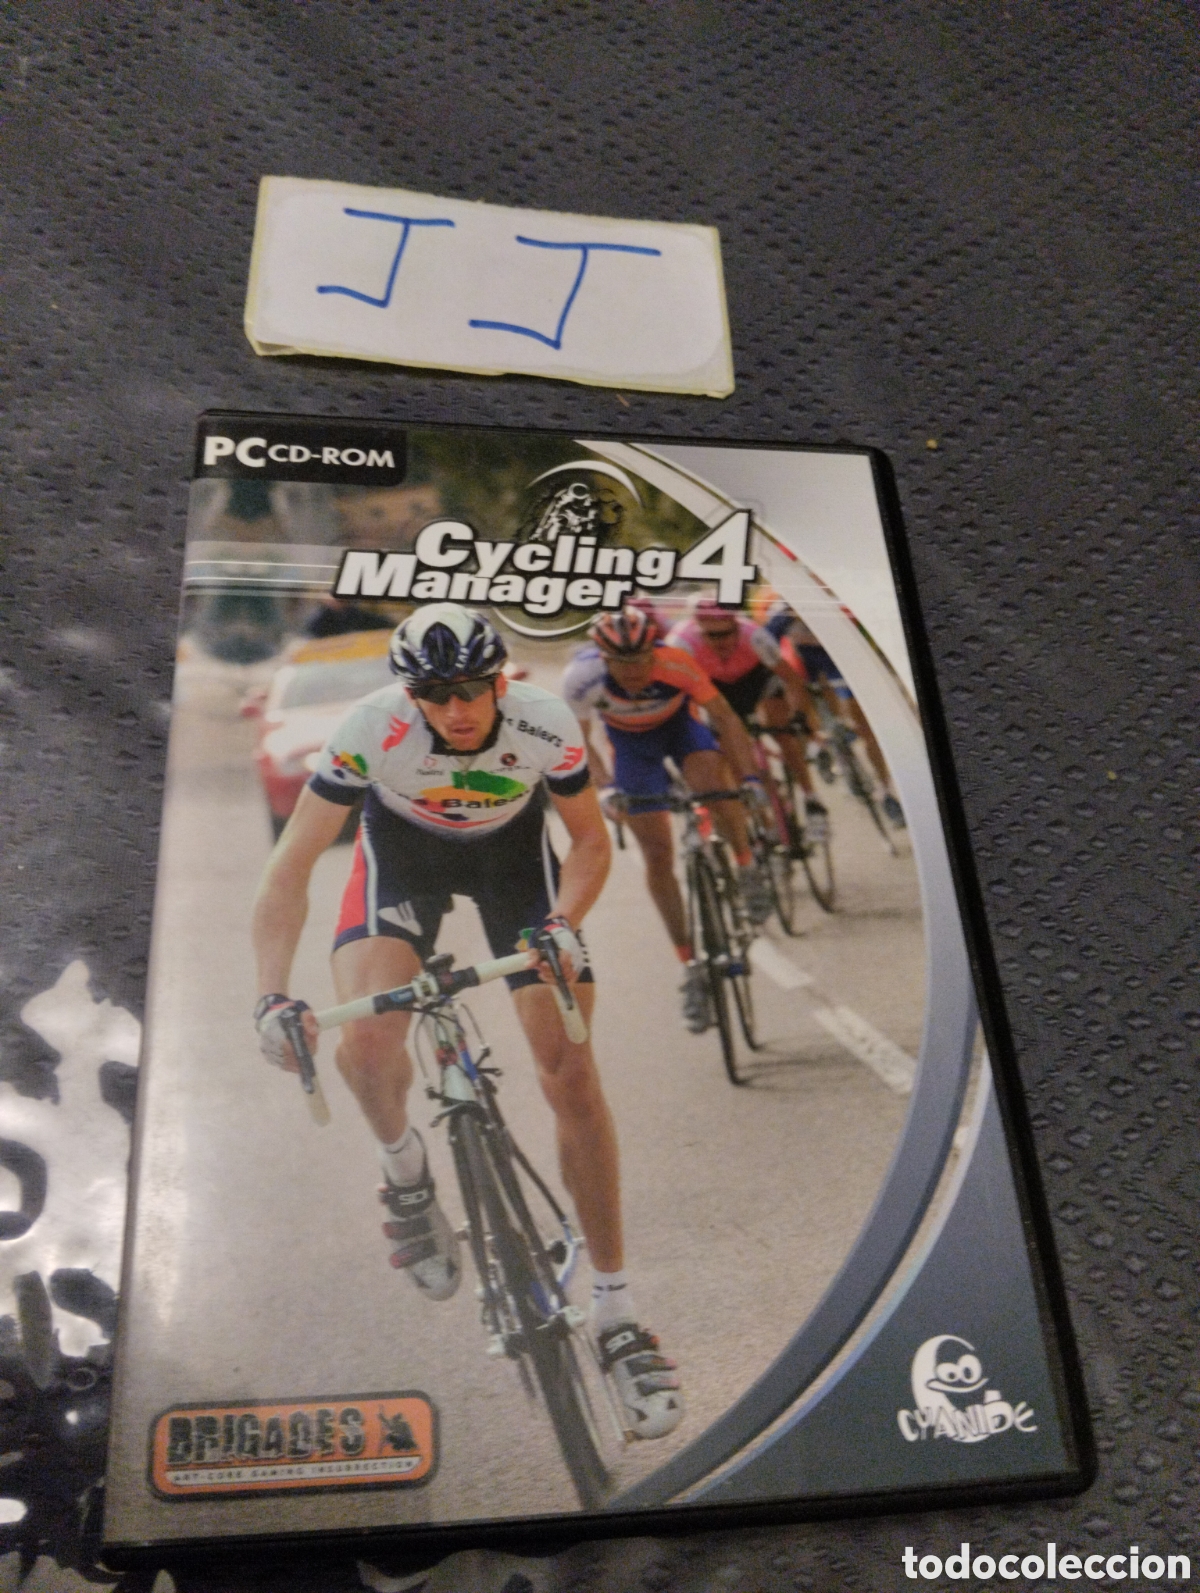 pc cd rom cycling manager 4 brigades completo - Comprar Videojogos PC no  todocoleccion